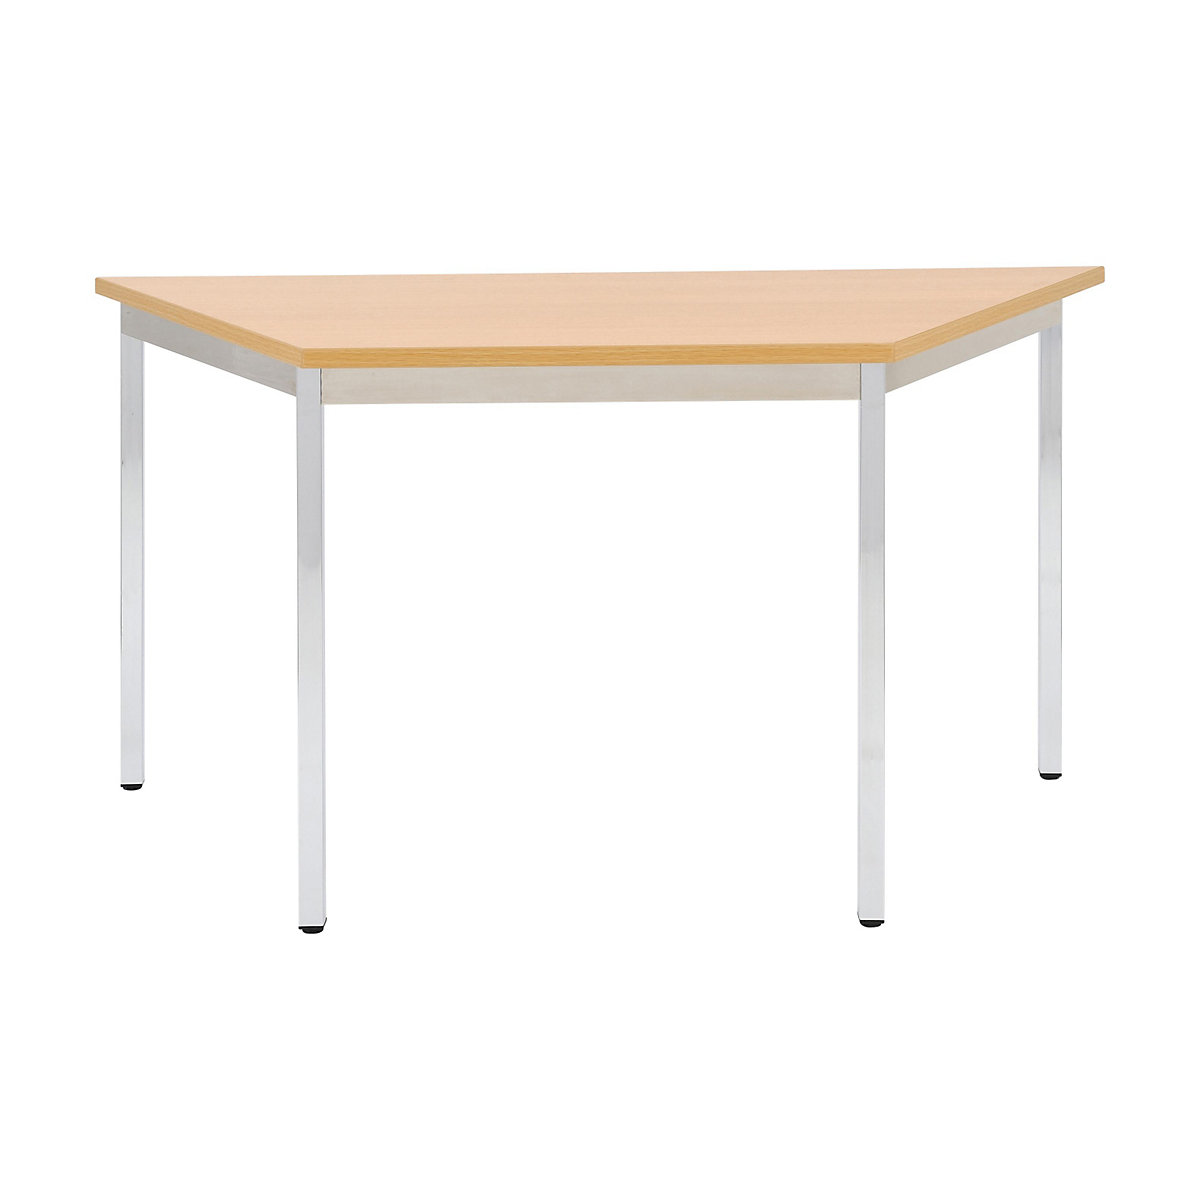 Víceúčelový stůl – eurokraft basic, lichoběžníkový tvar, v x š x h 740 x 1200 x 600 mm, deska v bukovém dekoru, podstavec pochromovaný-16